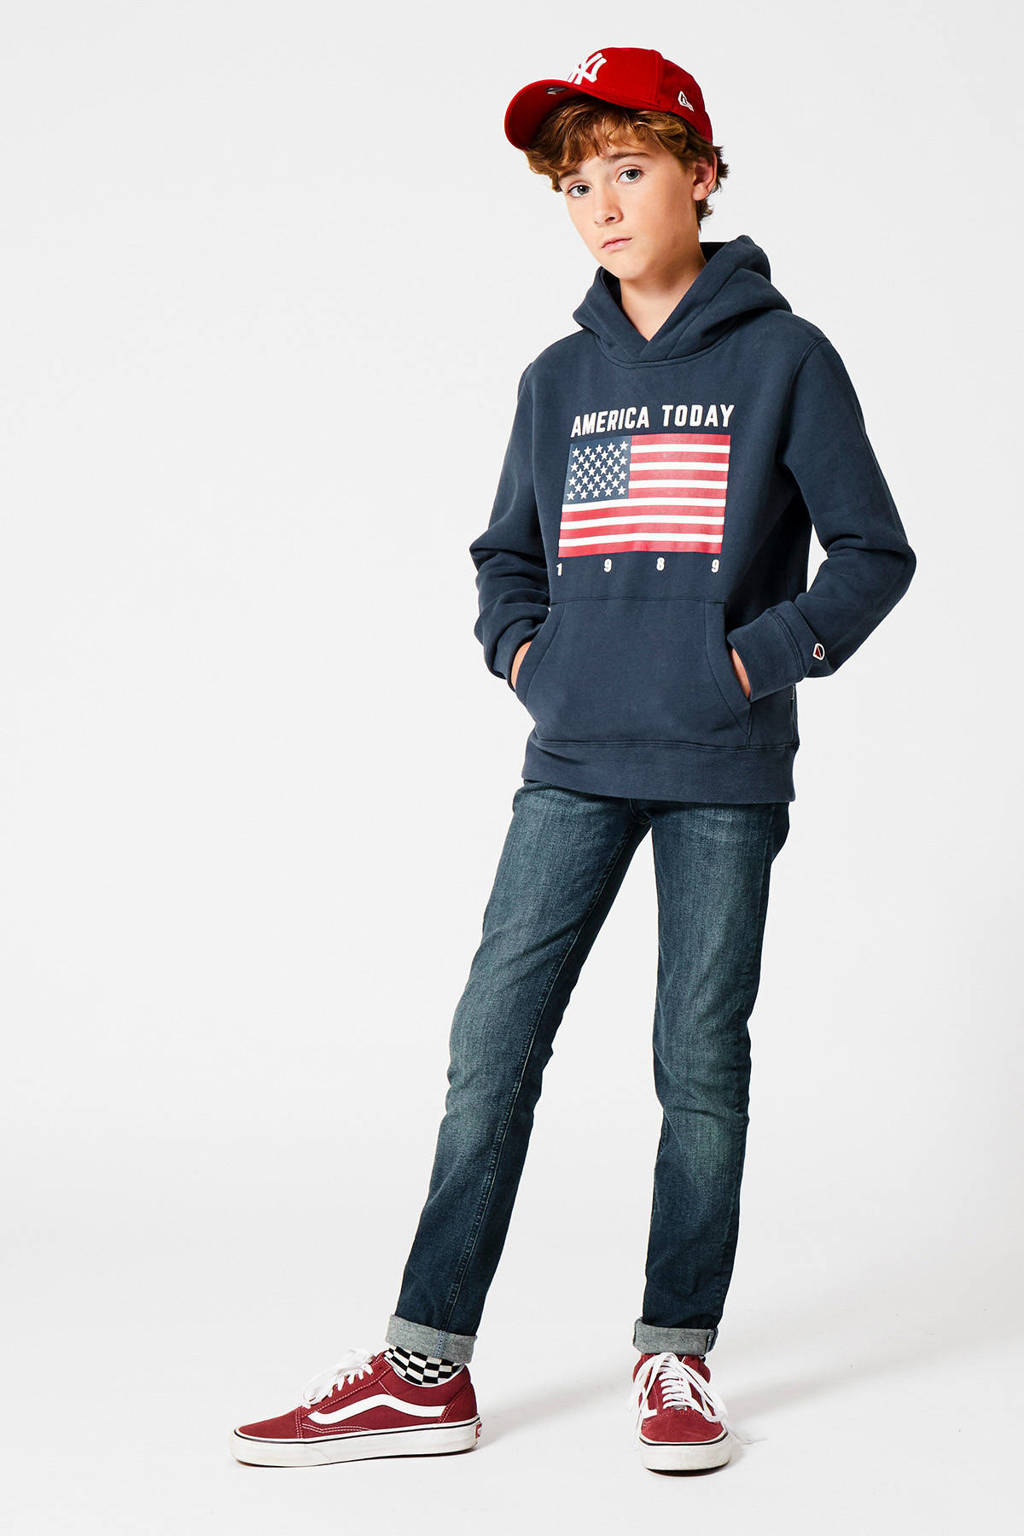 Blauwe jongens America Today Junior hoodie Steven Flag van sweat materiaal met printopdruk, lange mouwen en capuchon